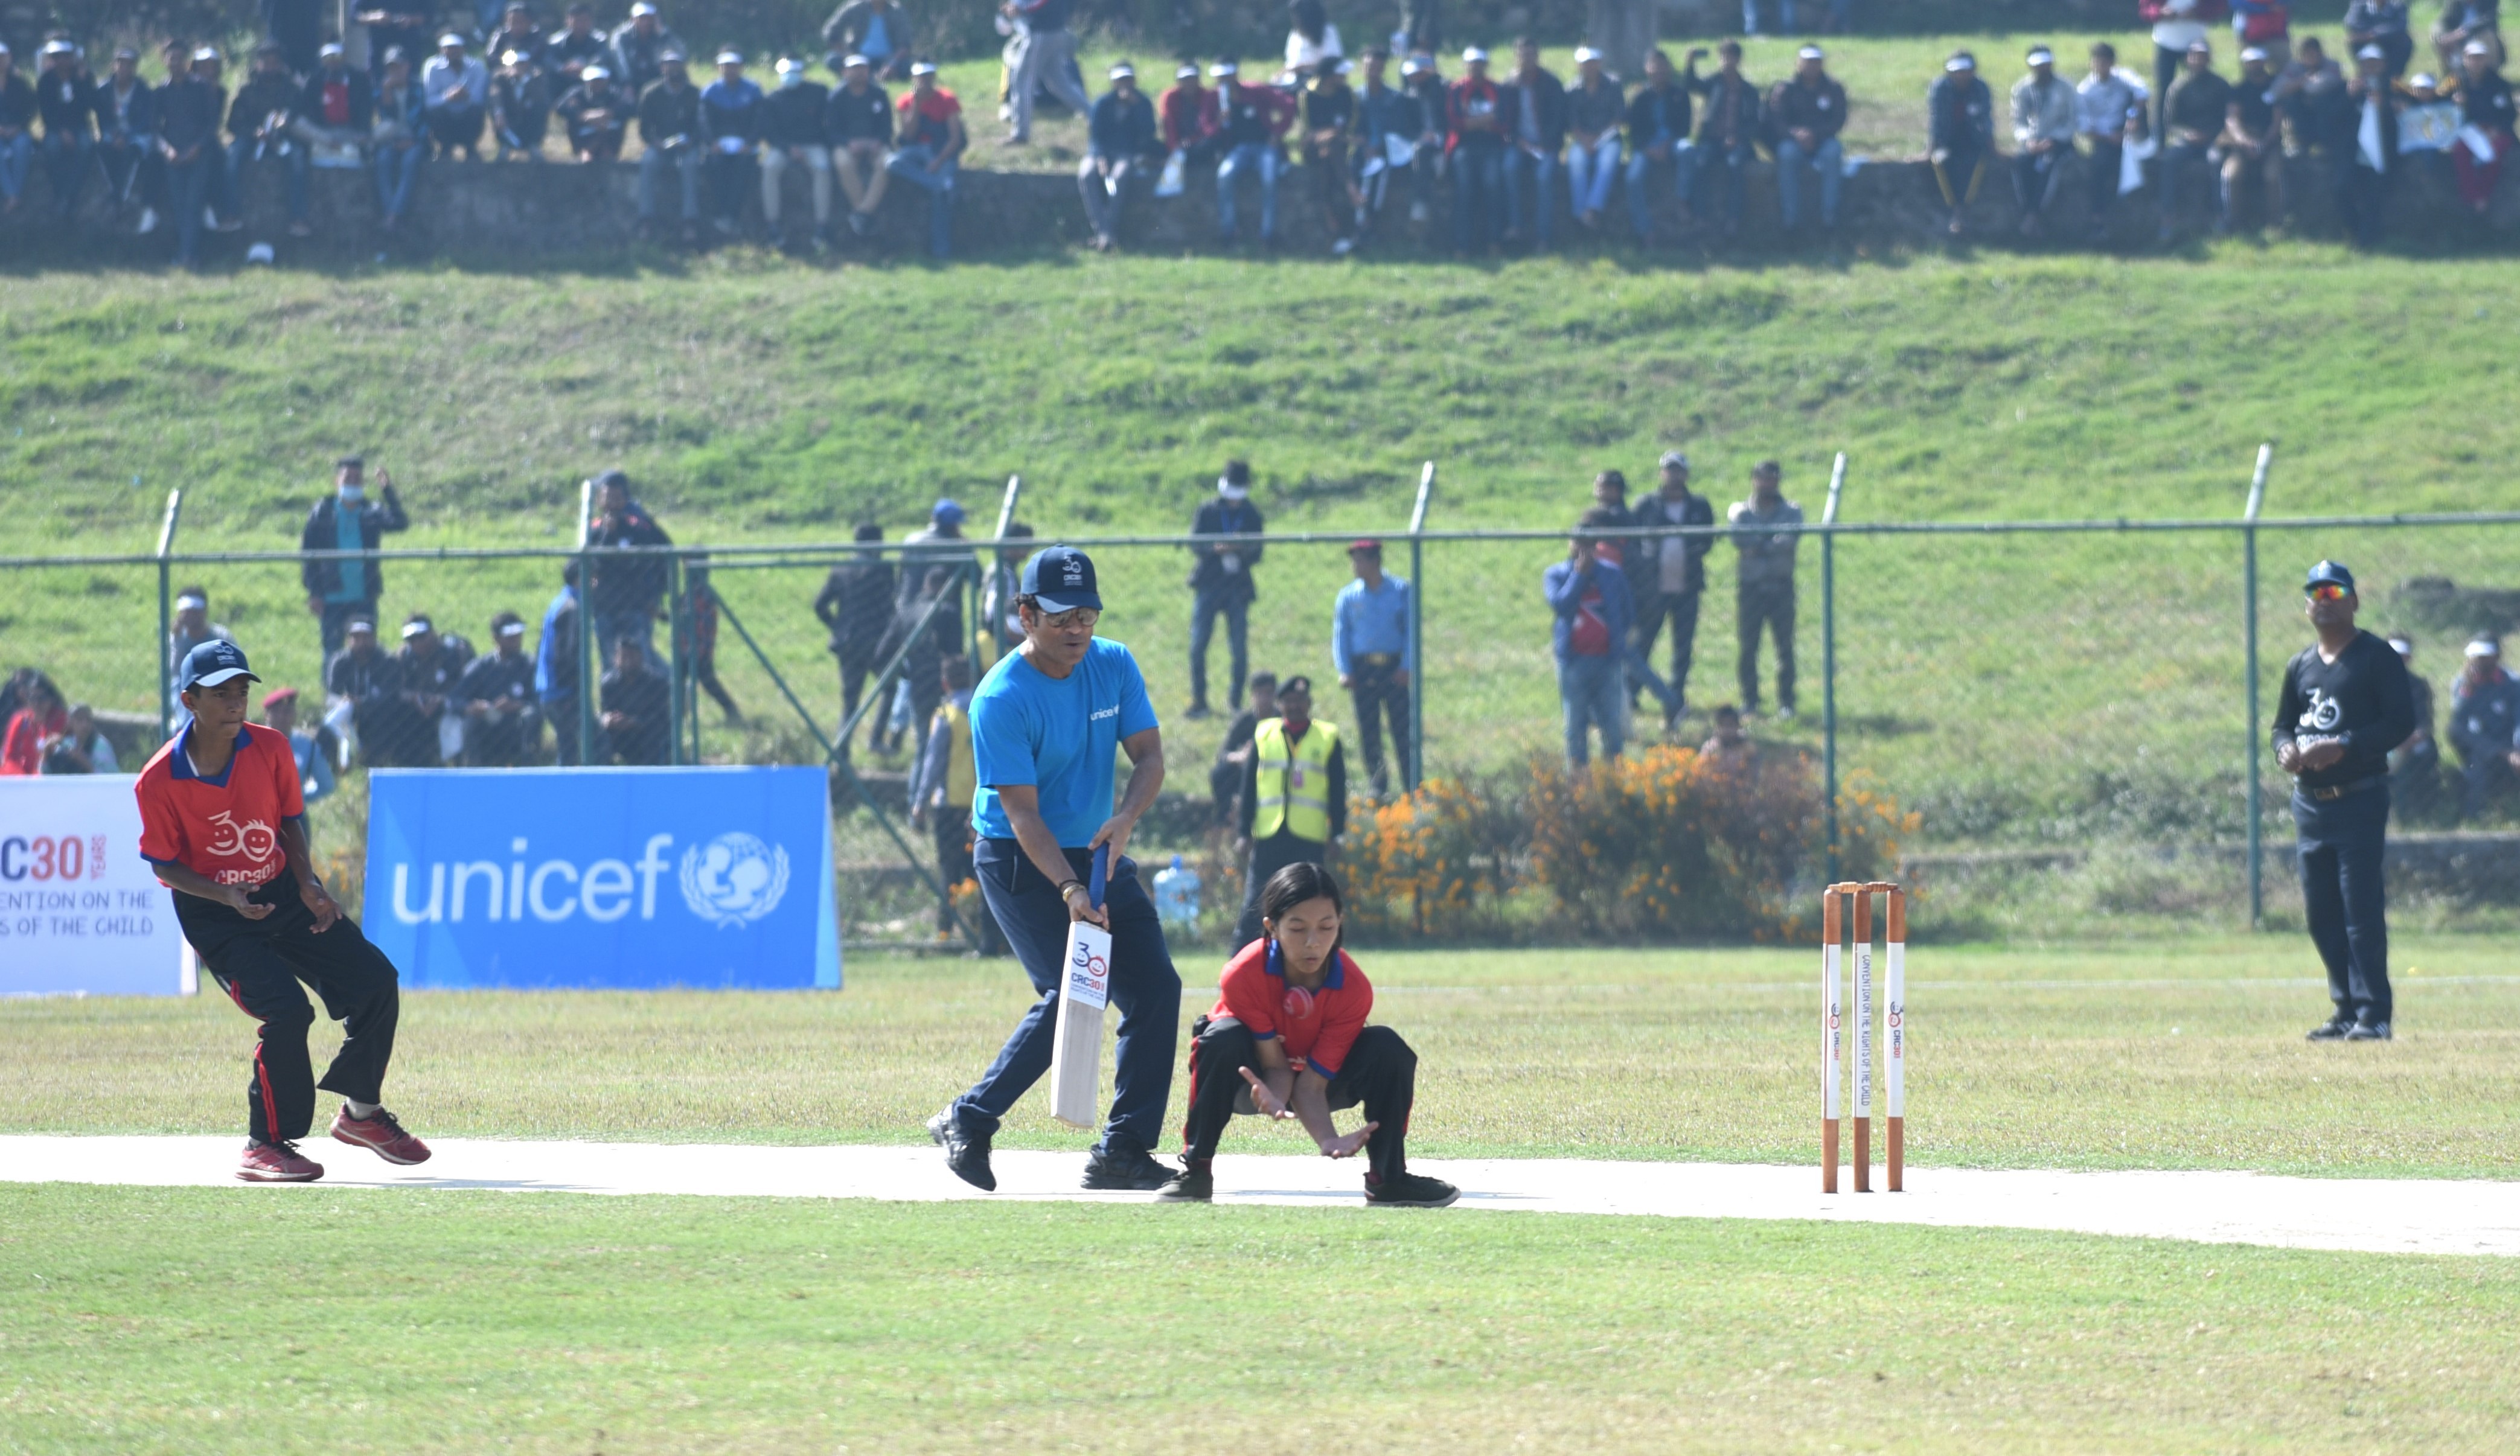 indian-cricket-legend-tendulkar-playing-match-at-kirtipur-cricket-ground